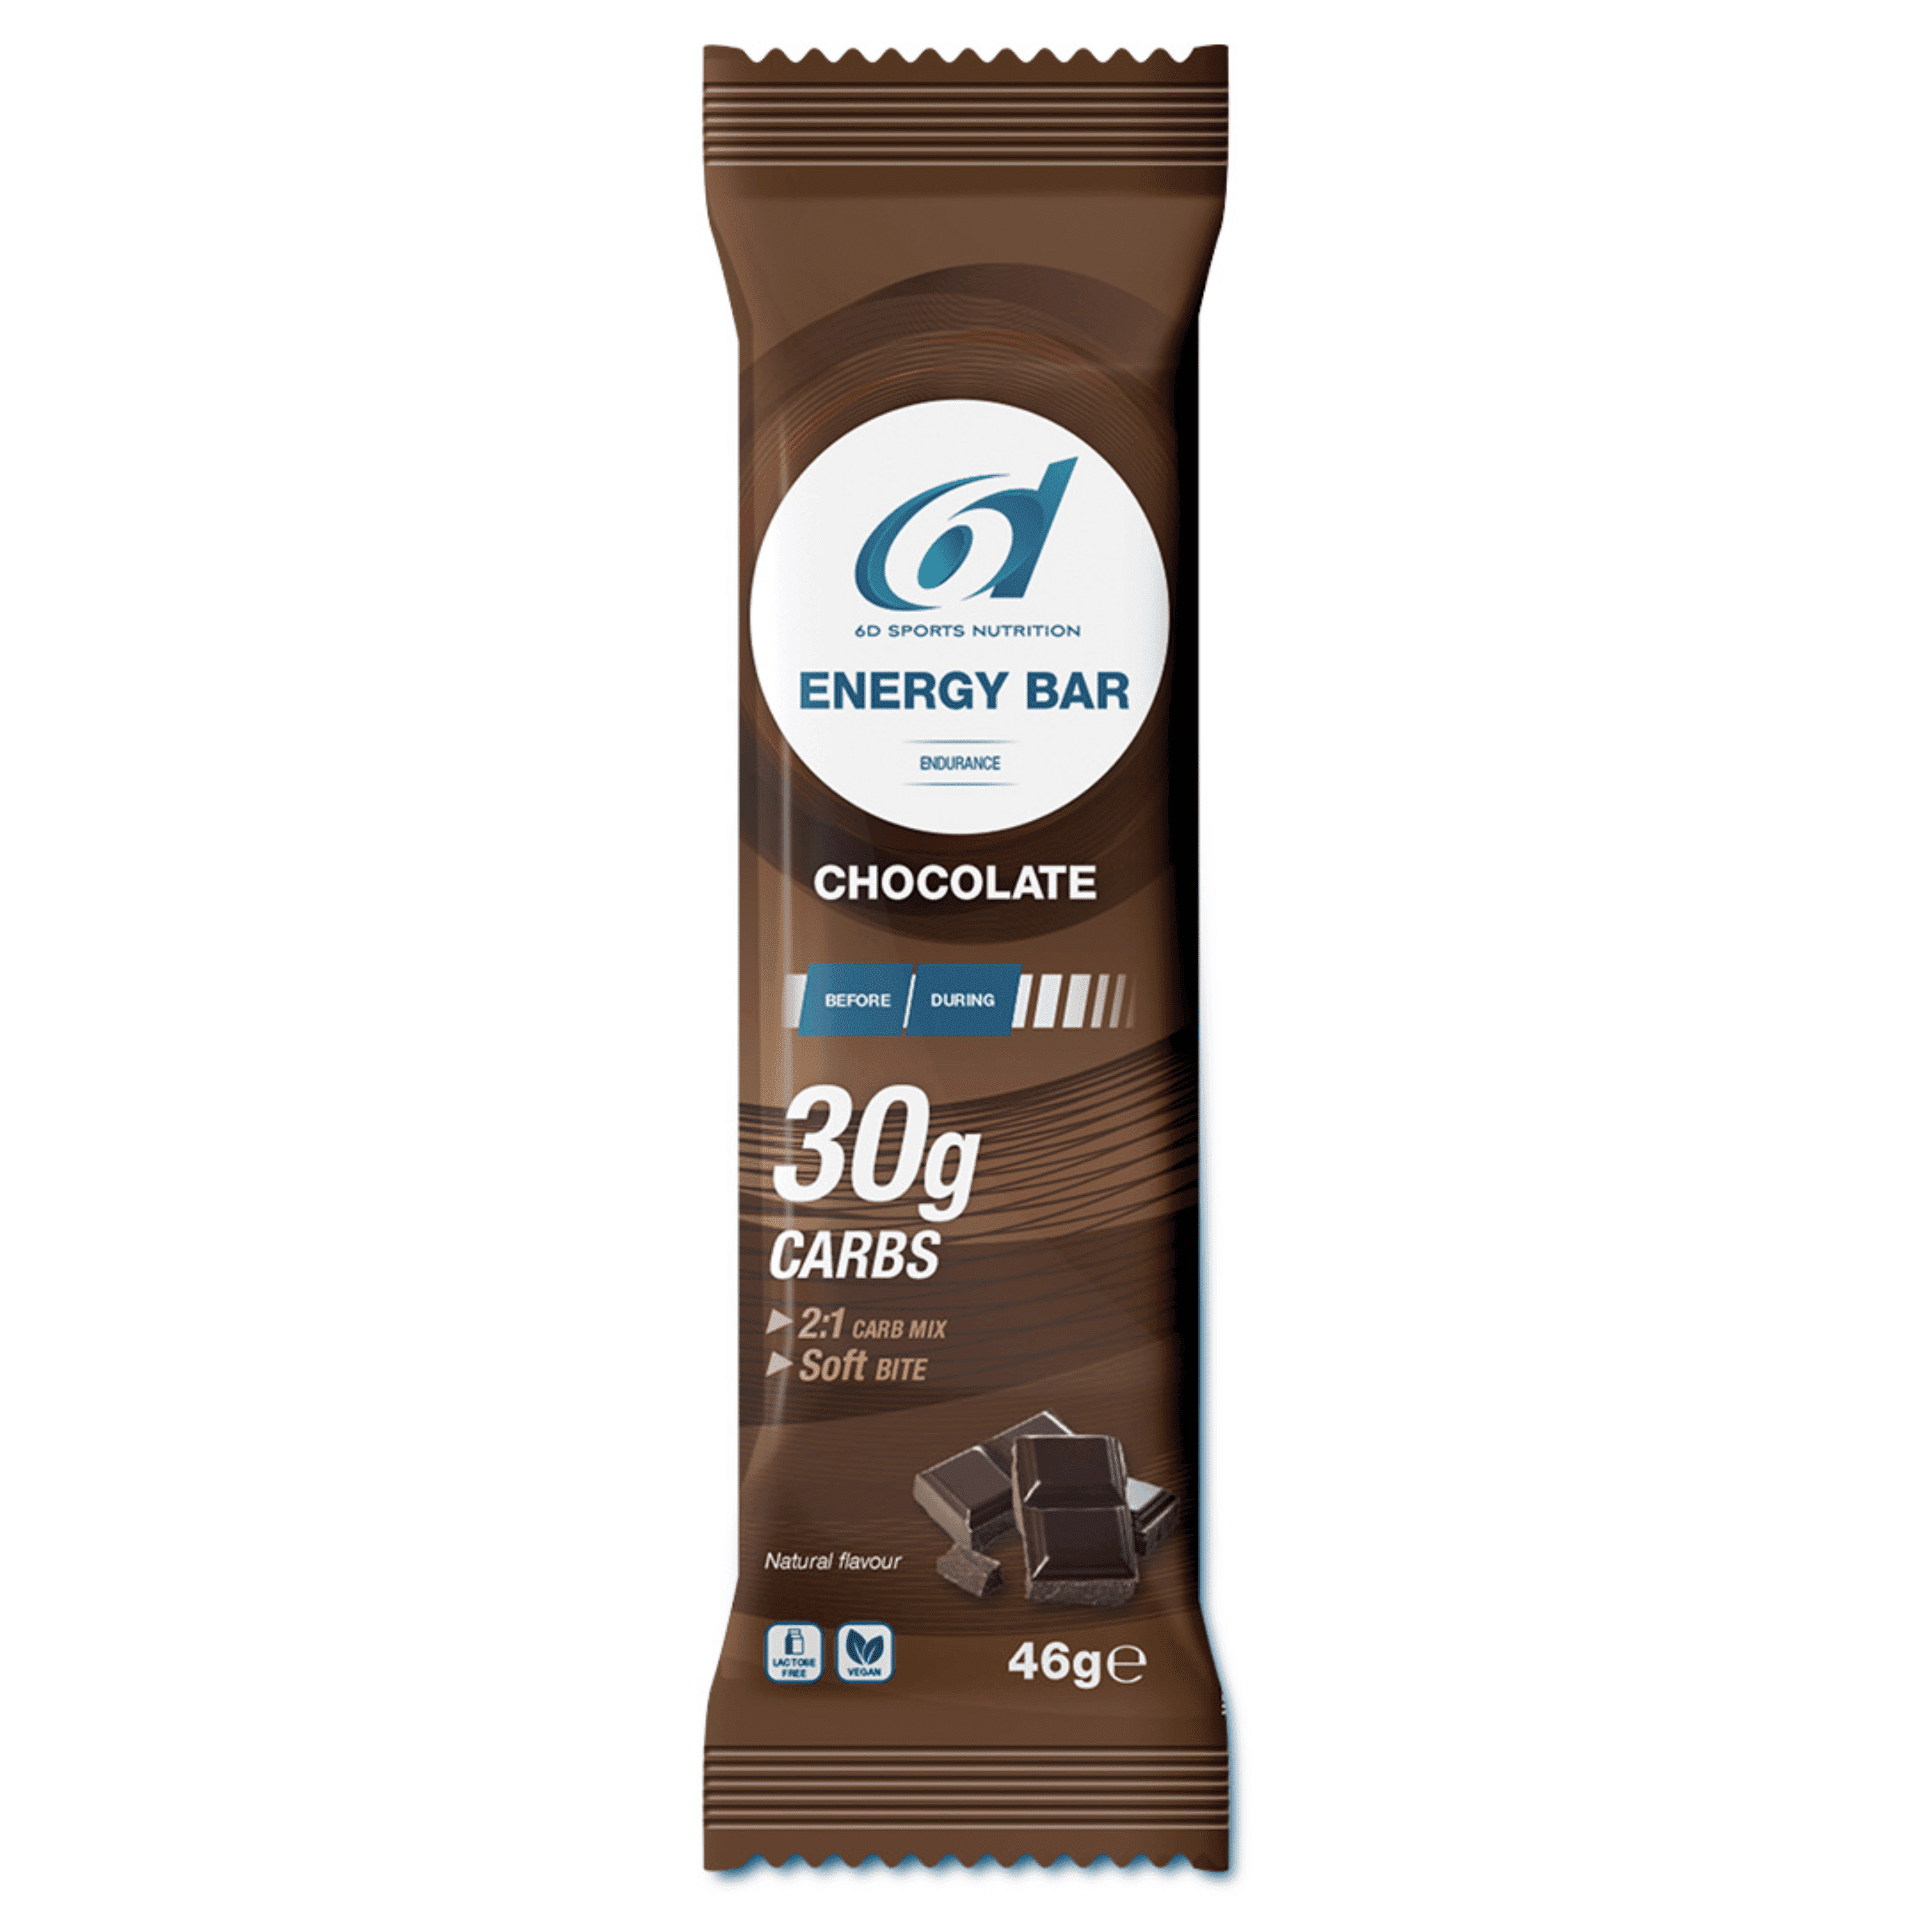 6d Energy Bar Chocolate 46g